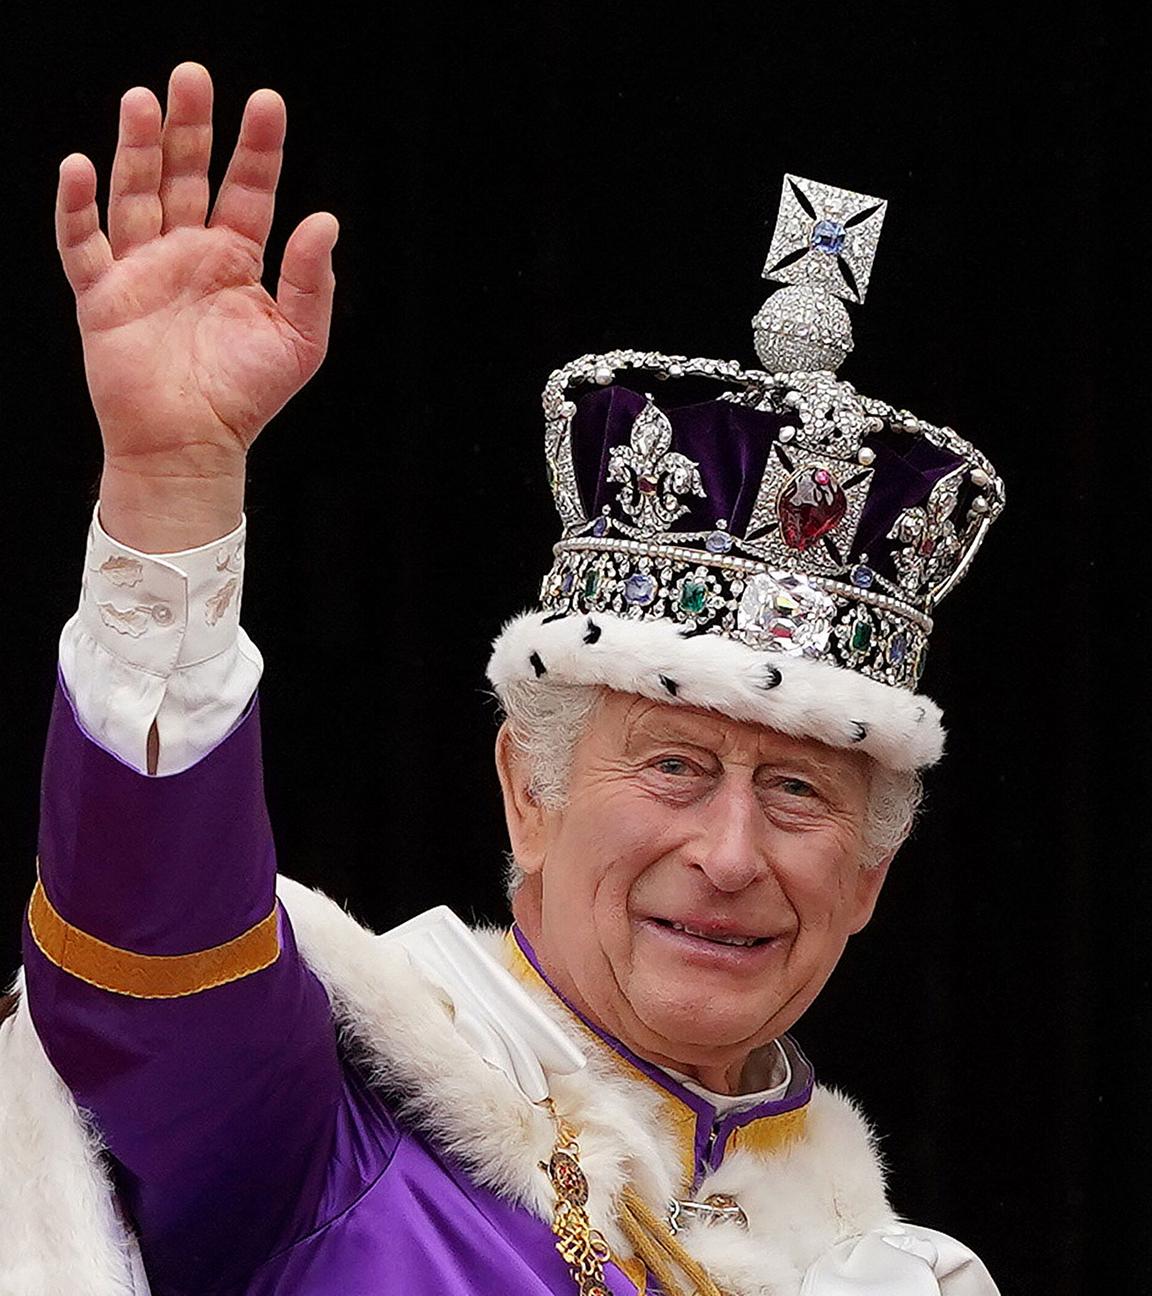 König Charles bei seiner Krönung mit Umhang und Krone. 